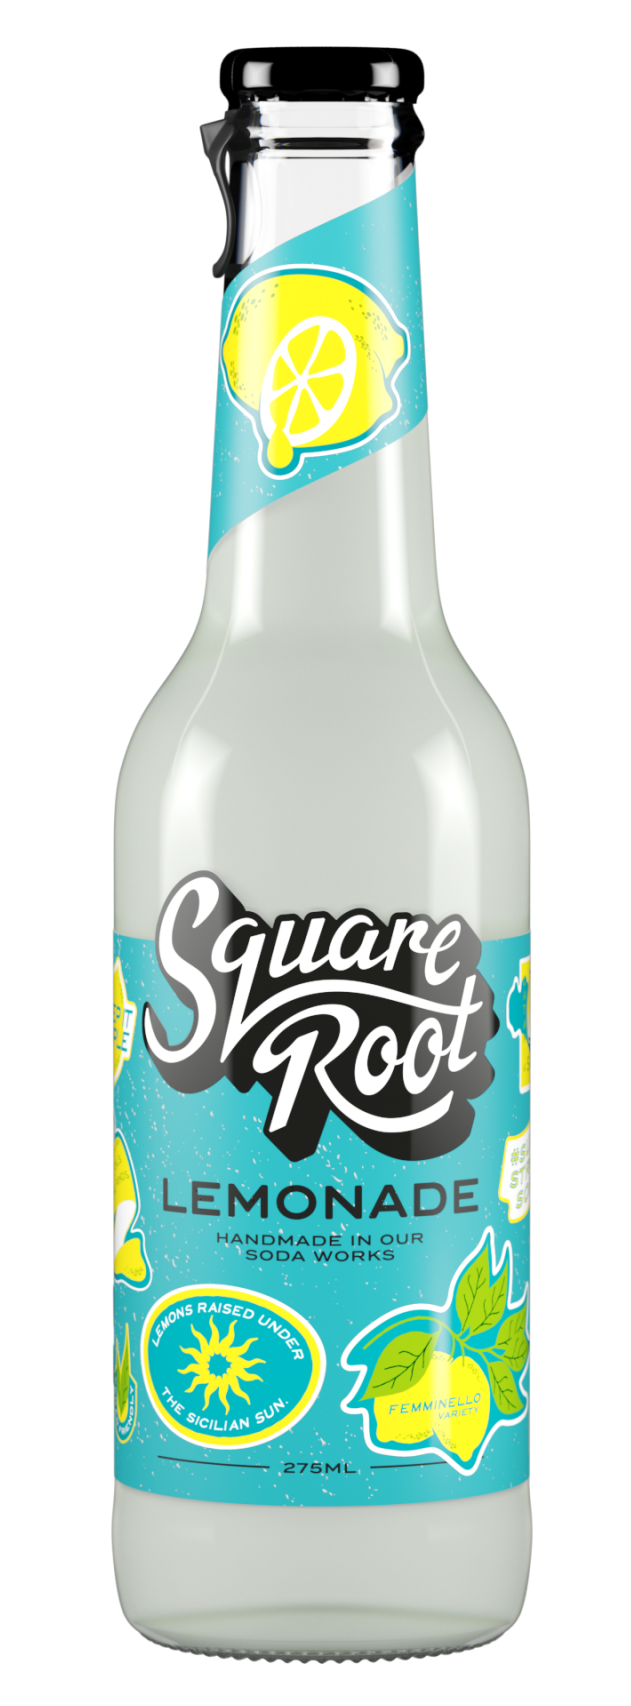 Square Root Lemonade